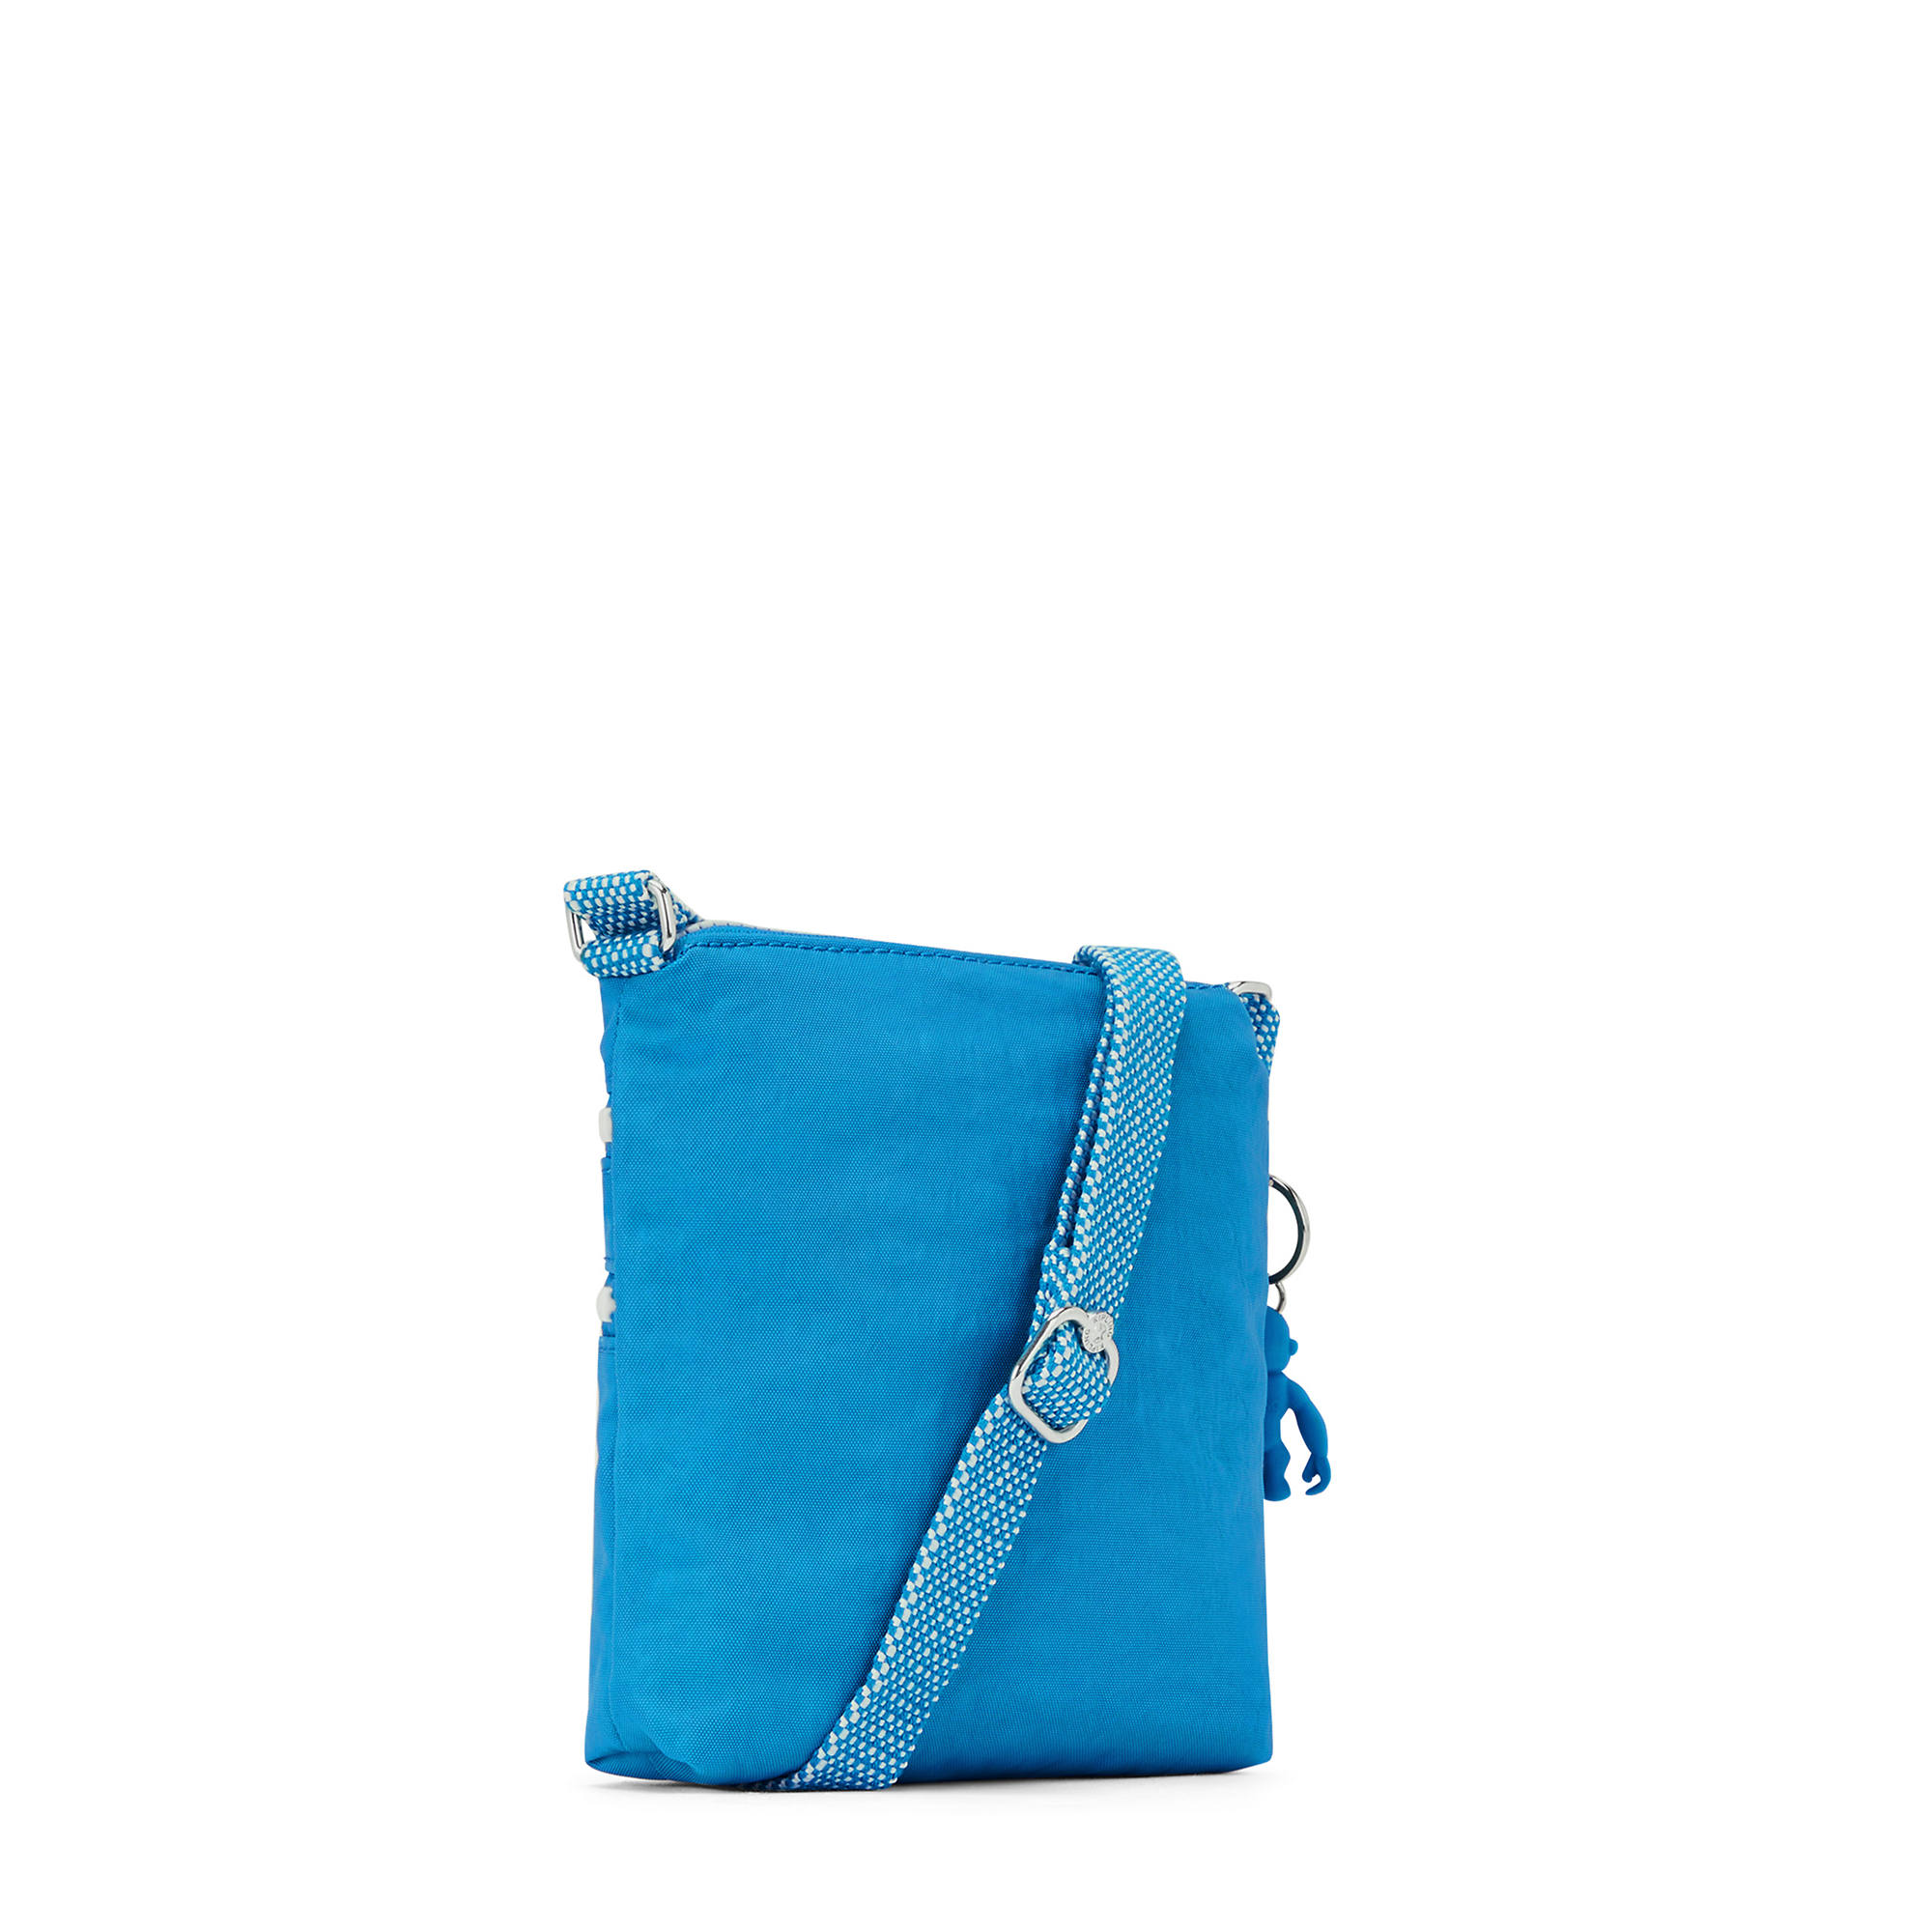 Kipling Women's Alvar Extra Small Crossbody Handbag with Adjustable ...